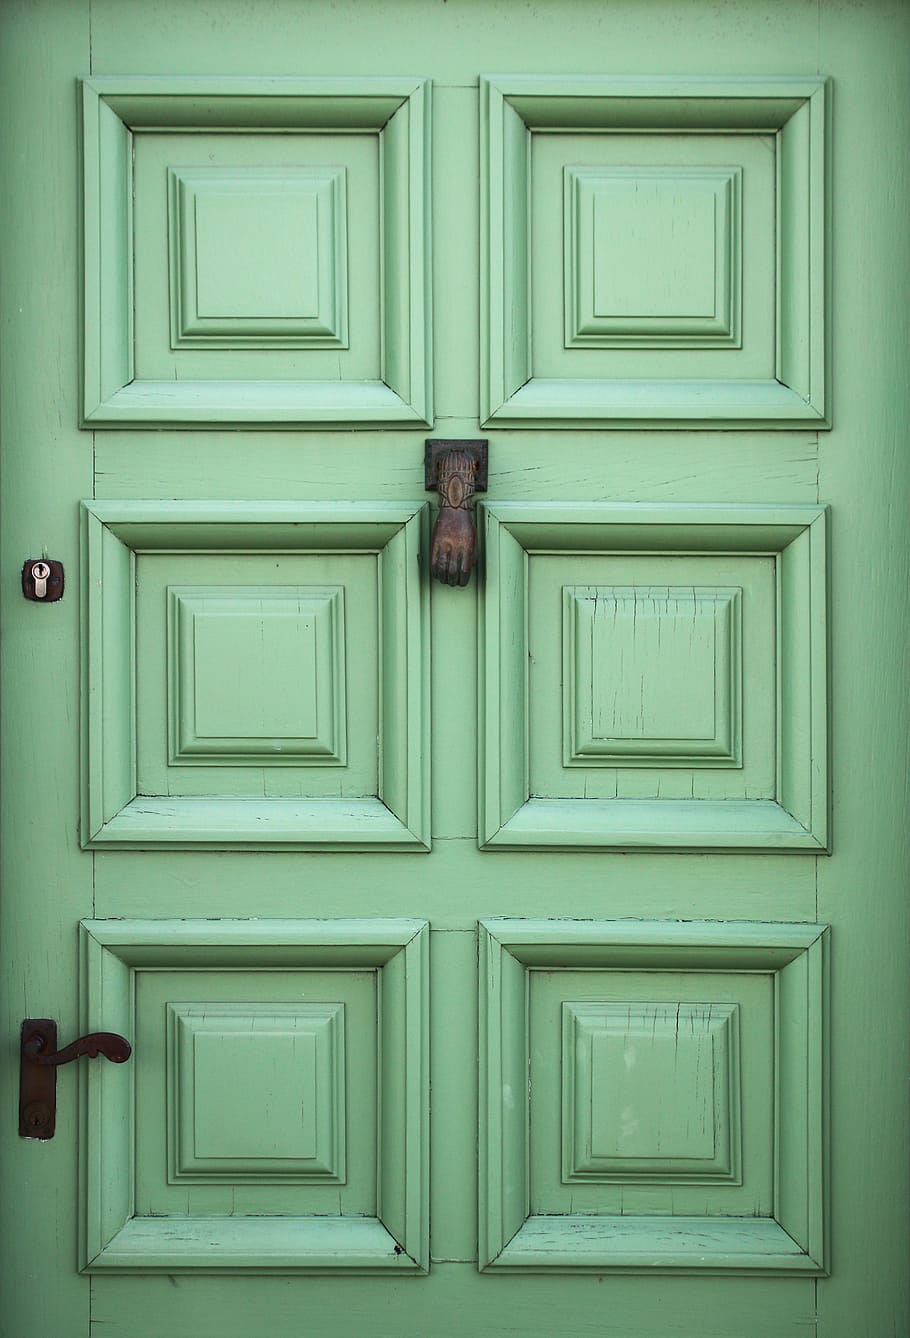 Porta verde, porta verde de madeira com 6 painéis, entrada, porta, fechado, ninguém, arquitetura, madeira - estrutura, estrutura construída, proteção